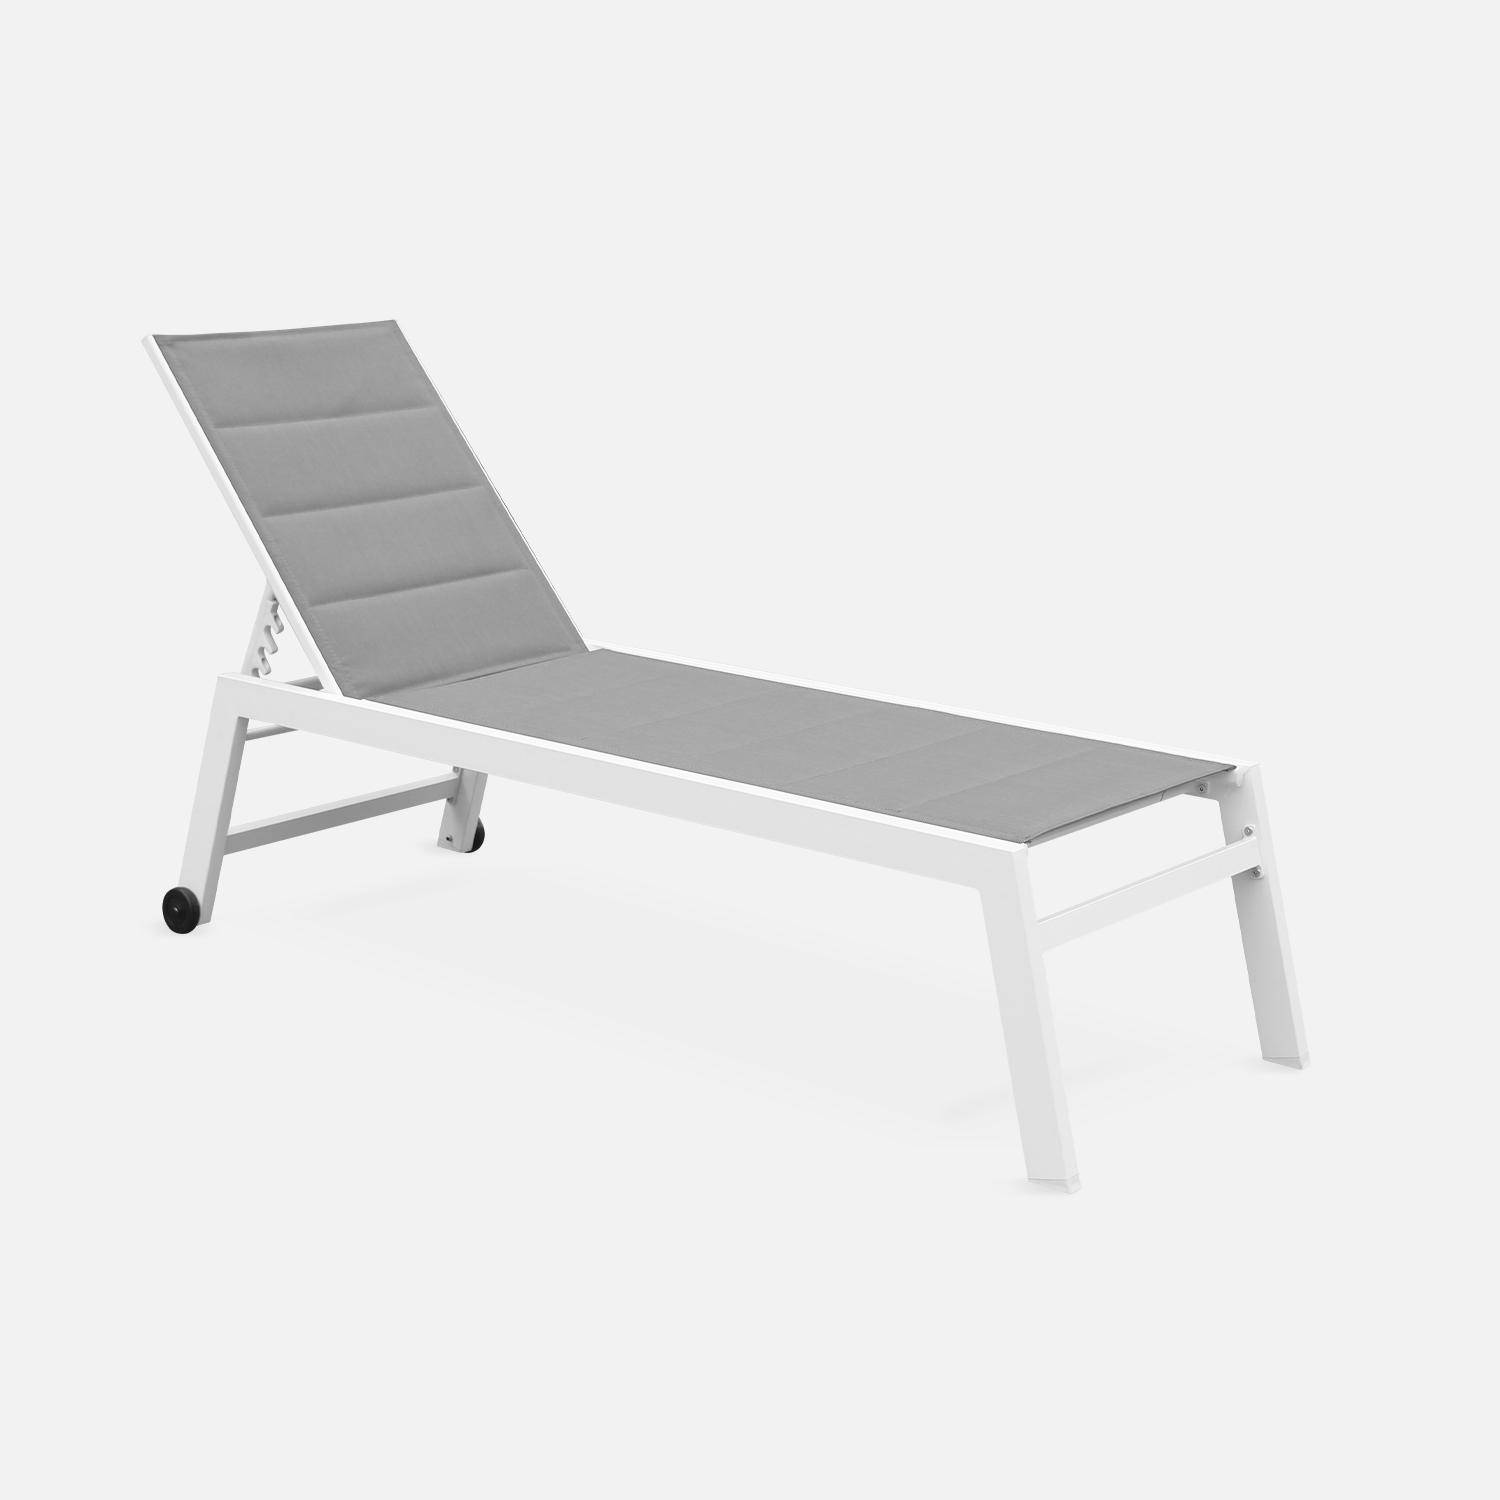 Sonnenliege - Solis - Liegestuhl aus gestepptem Textilene mit 6 Positionen, weißes Gestell, graues Textilene Photo2